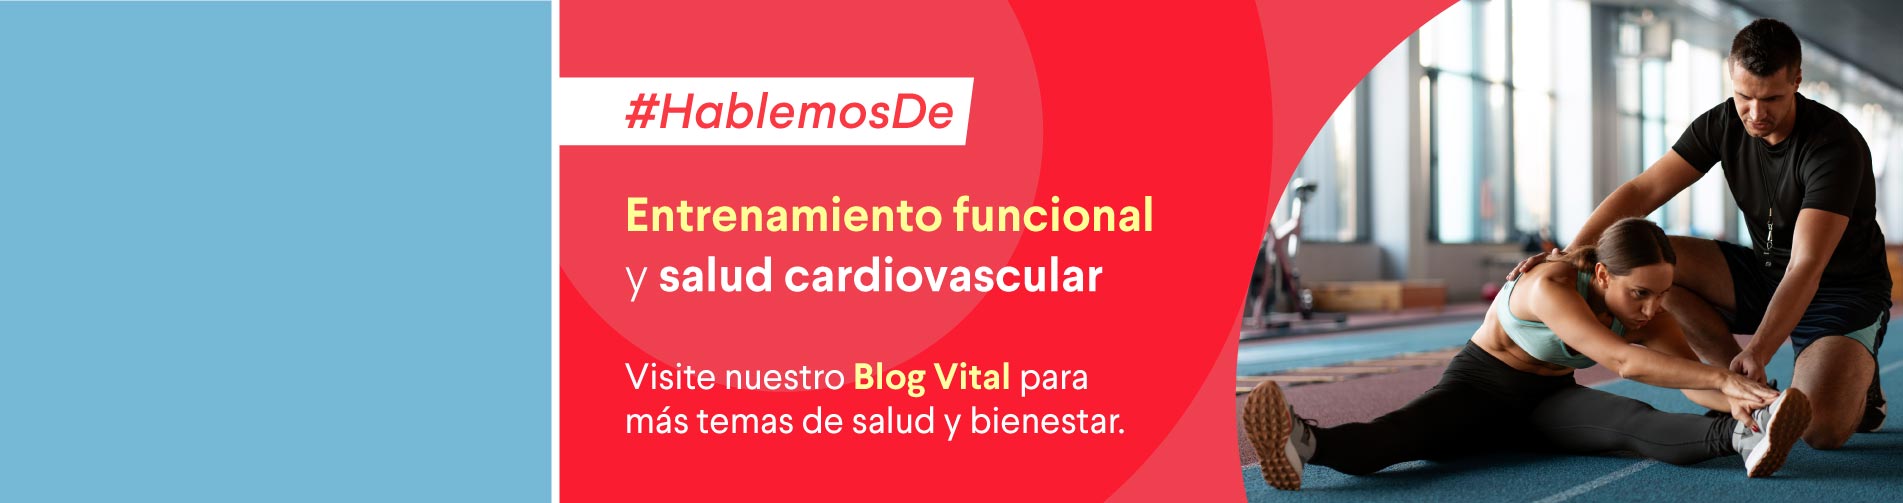 Banner home blog vital: Entrenamiento funcional y salud cardiovascular